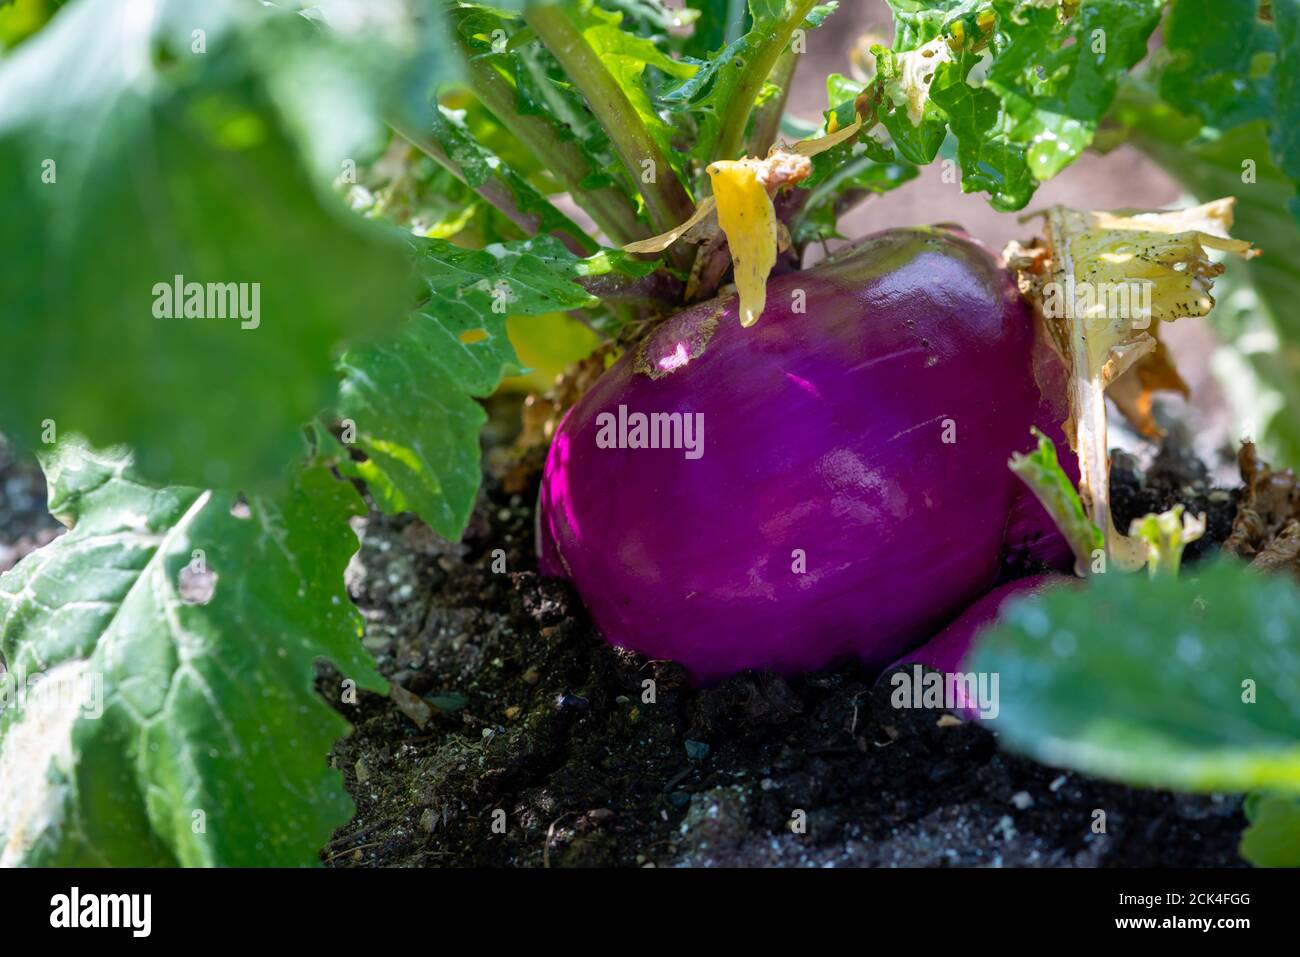 Ein großes rundes Bio-lila-gefärbtes Rüben- oder Ruderebaker-Wurzelgemüse, das in einem erhöhten Bettgarten wächst. Stockfoto